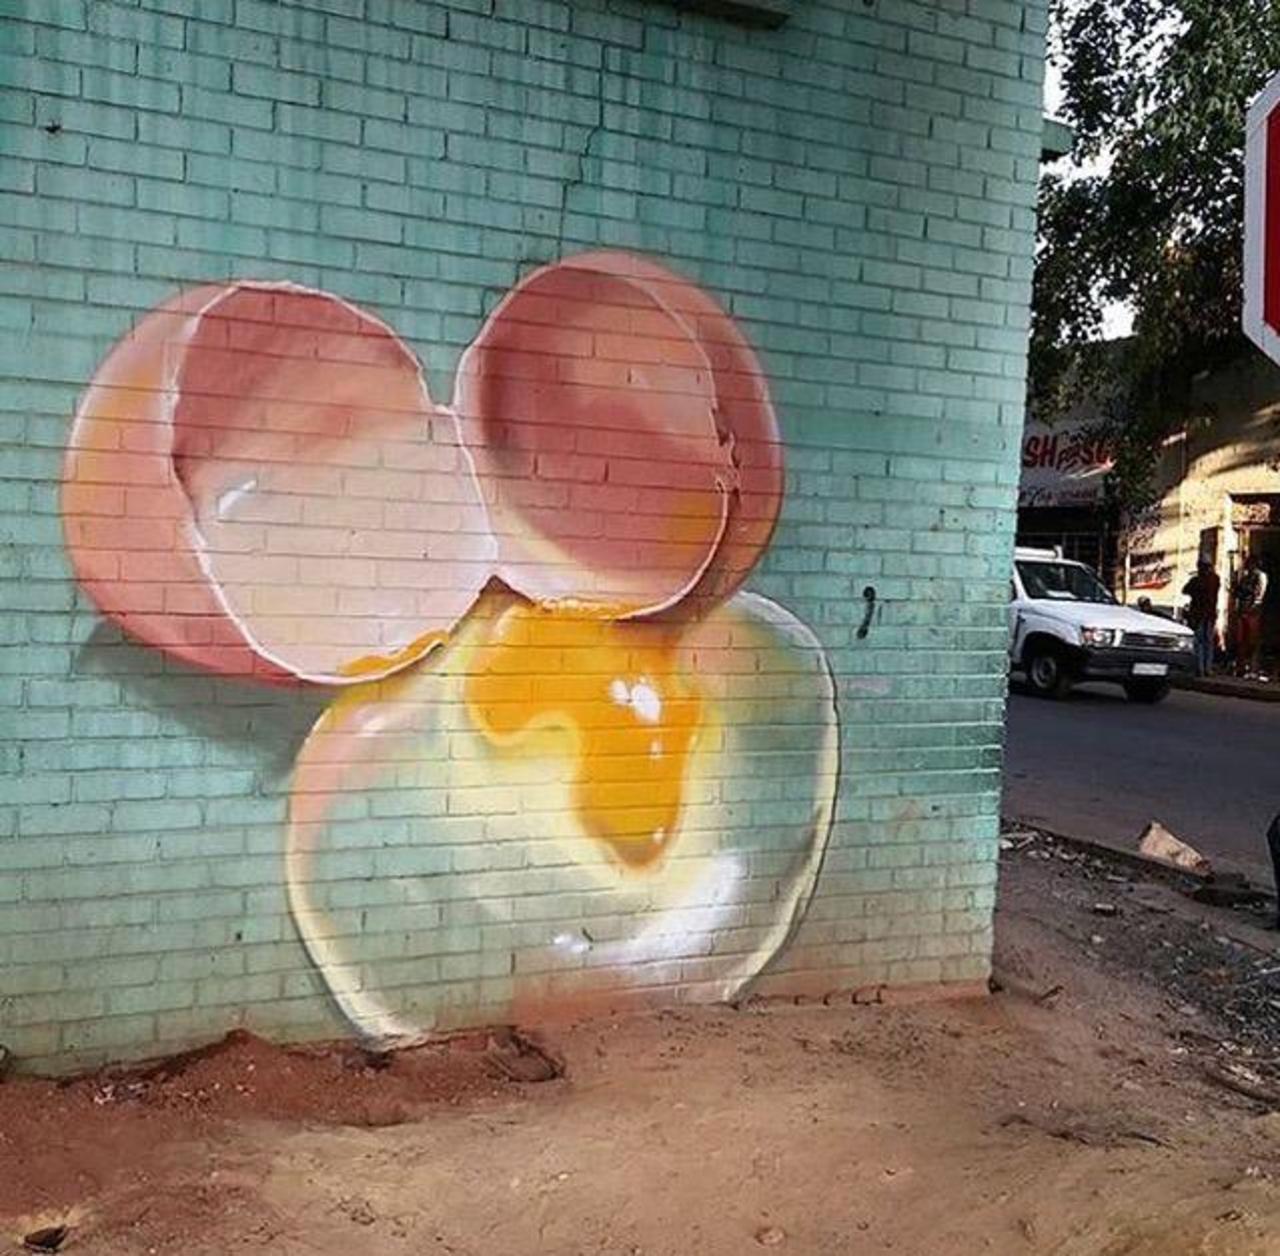 Street Art by falco1 in Johannesburg SA  

#art #graffiti #mural #streetart http://t.co/Xd9Ut7s52J